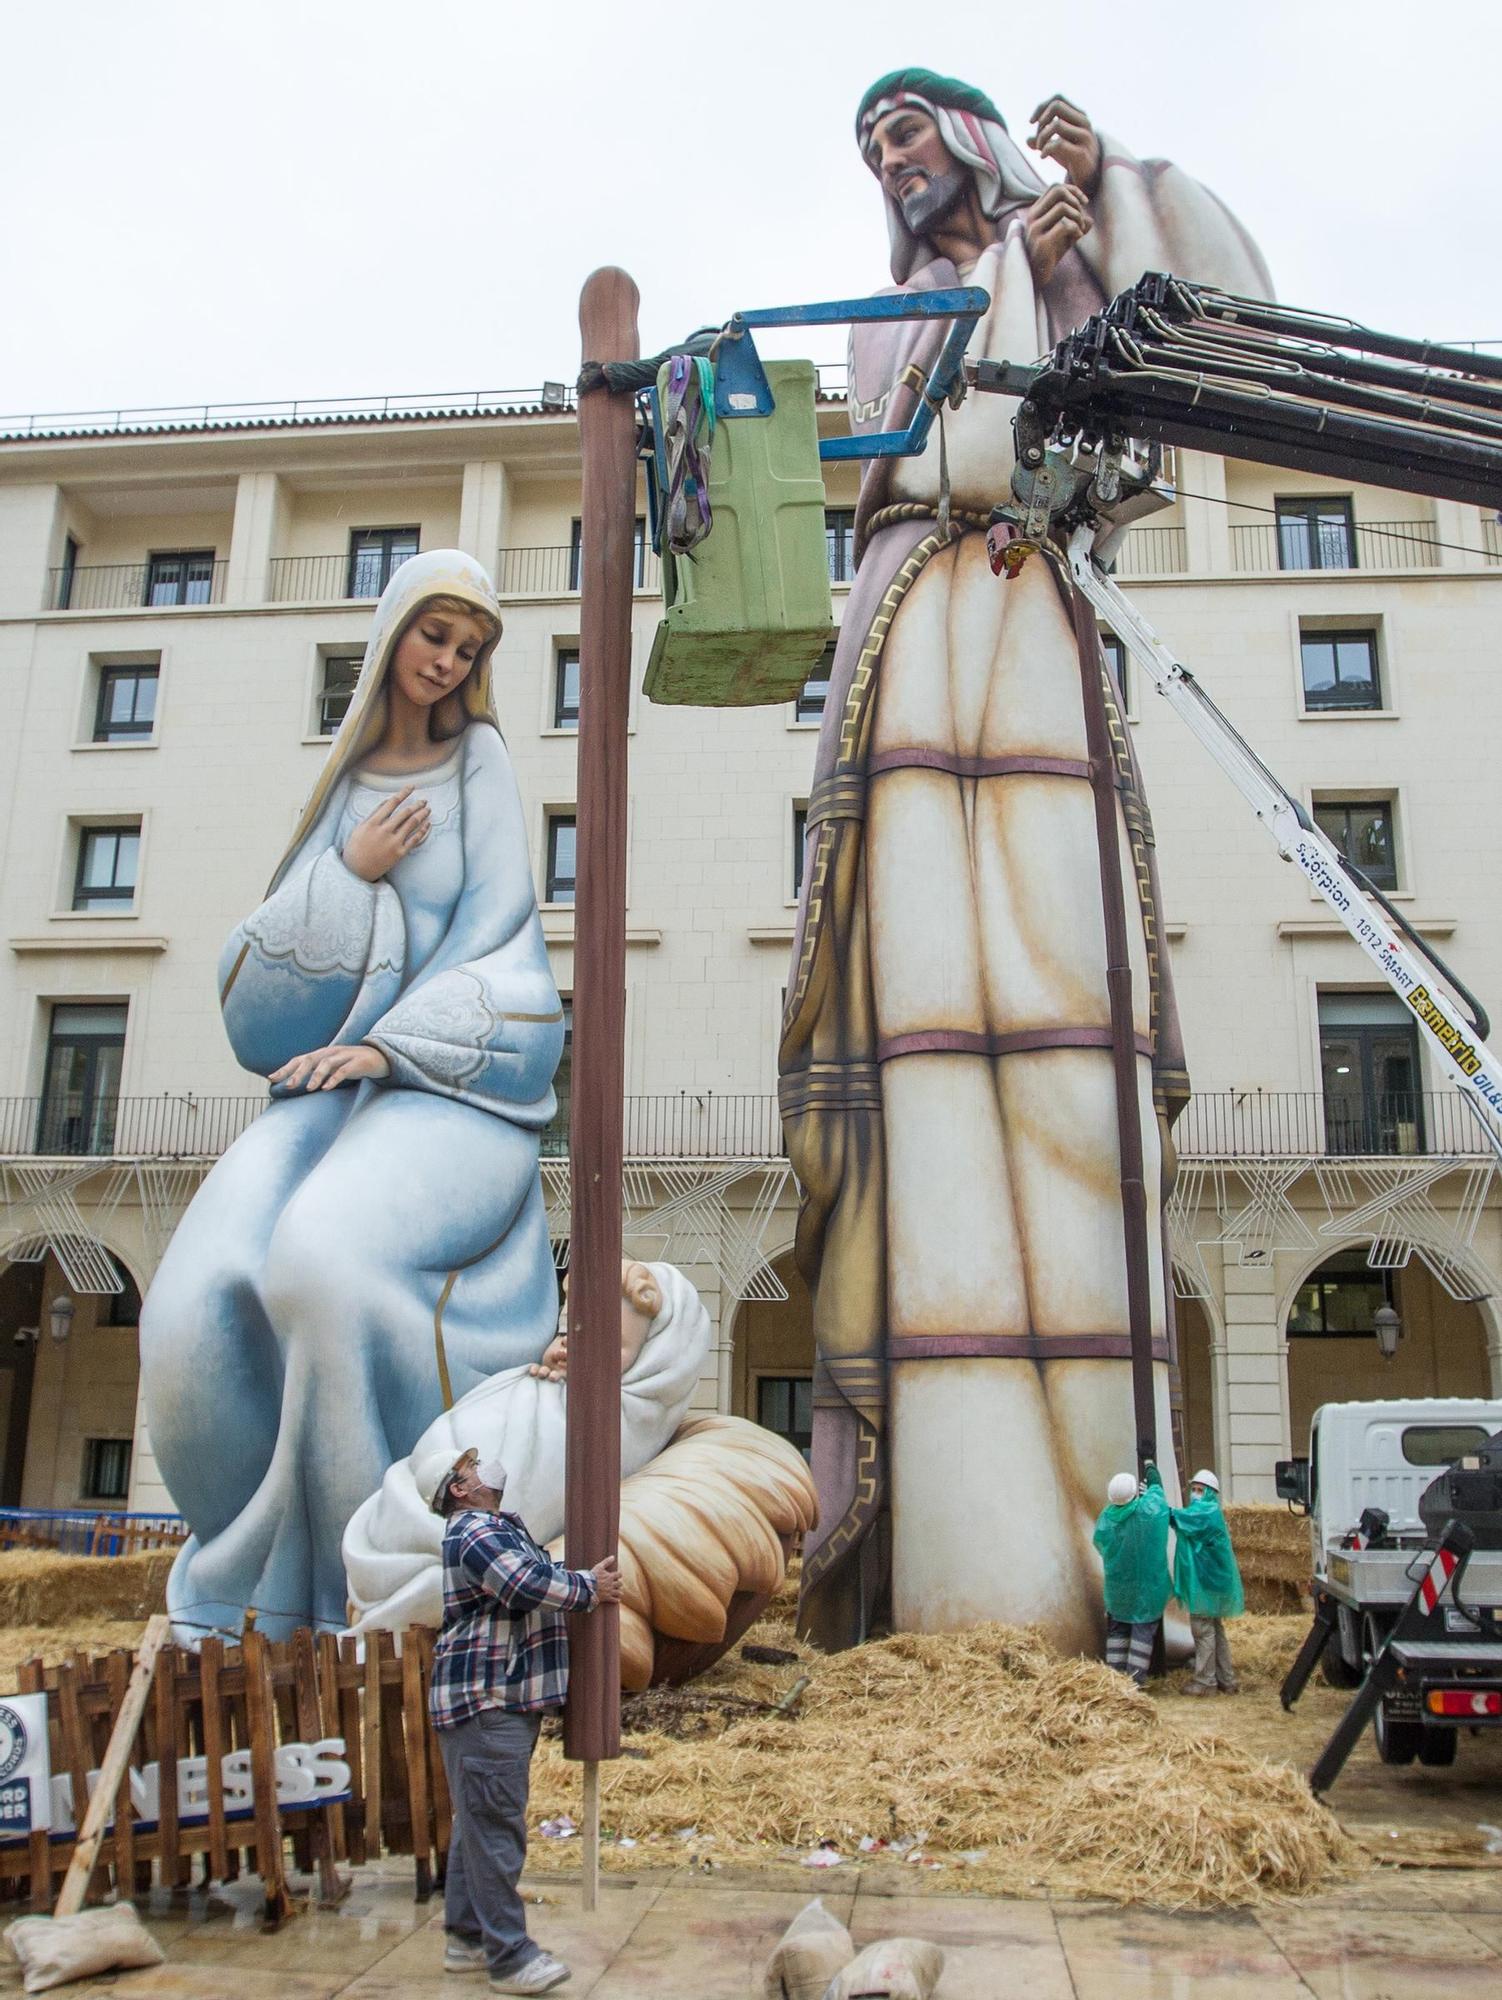 Arranca el desmontaje del Belén Gigante pese a la lluvia en Alicante